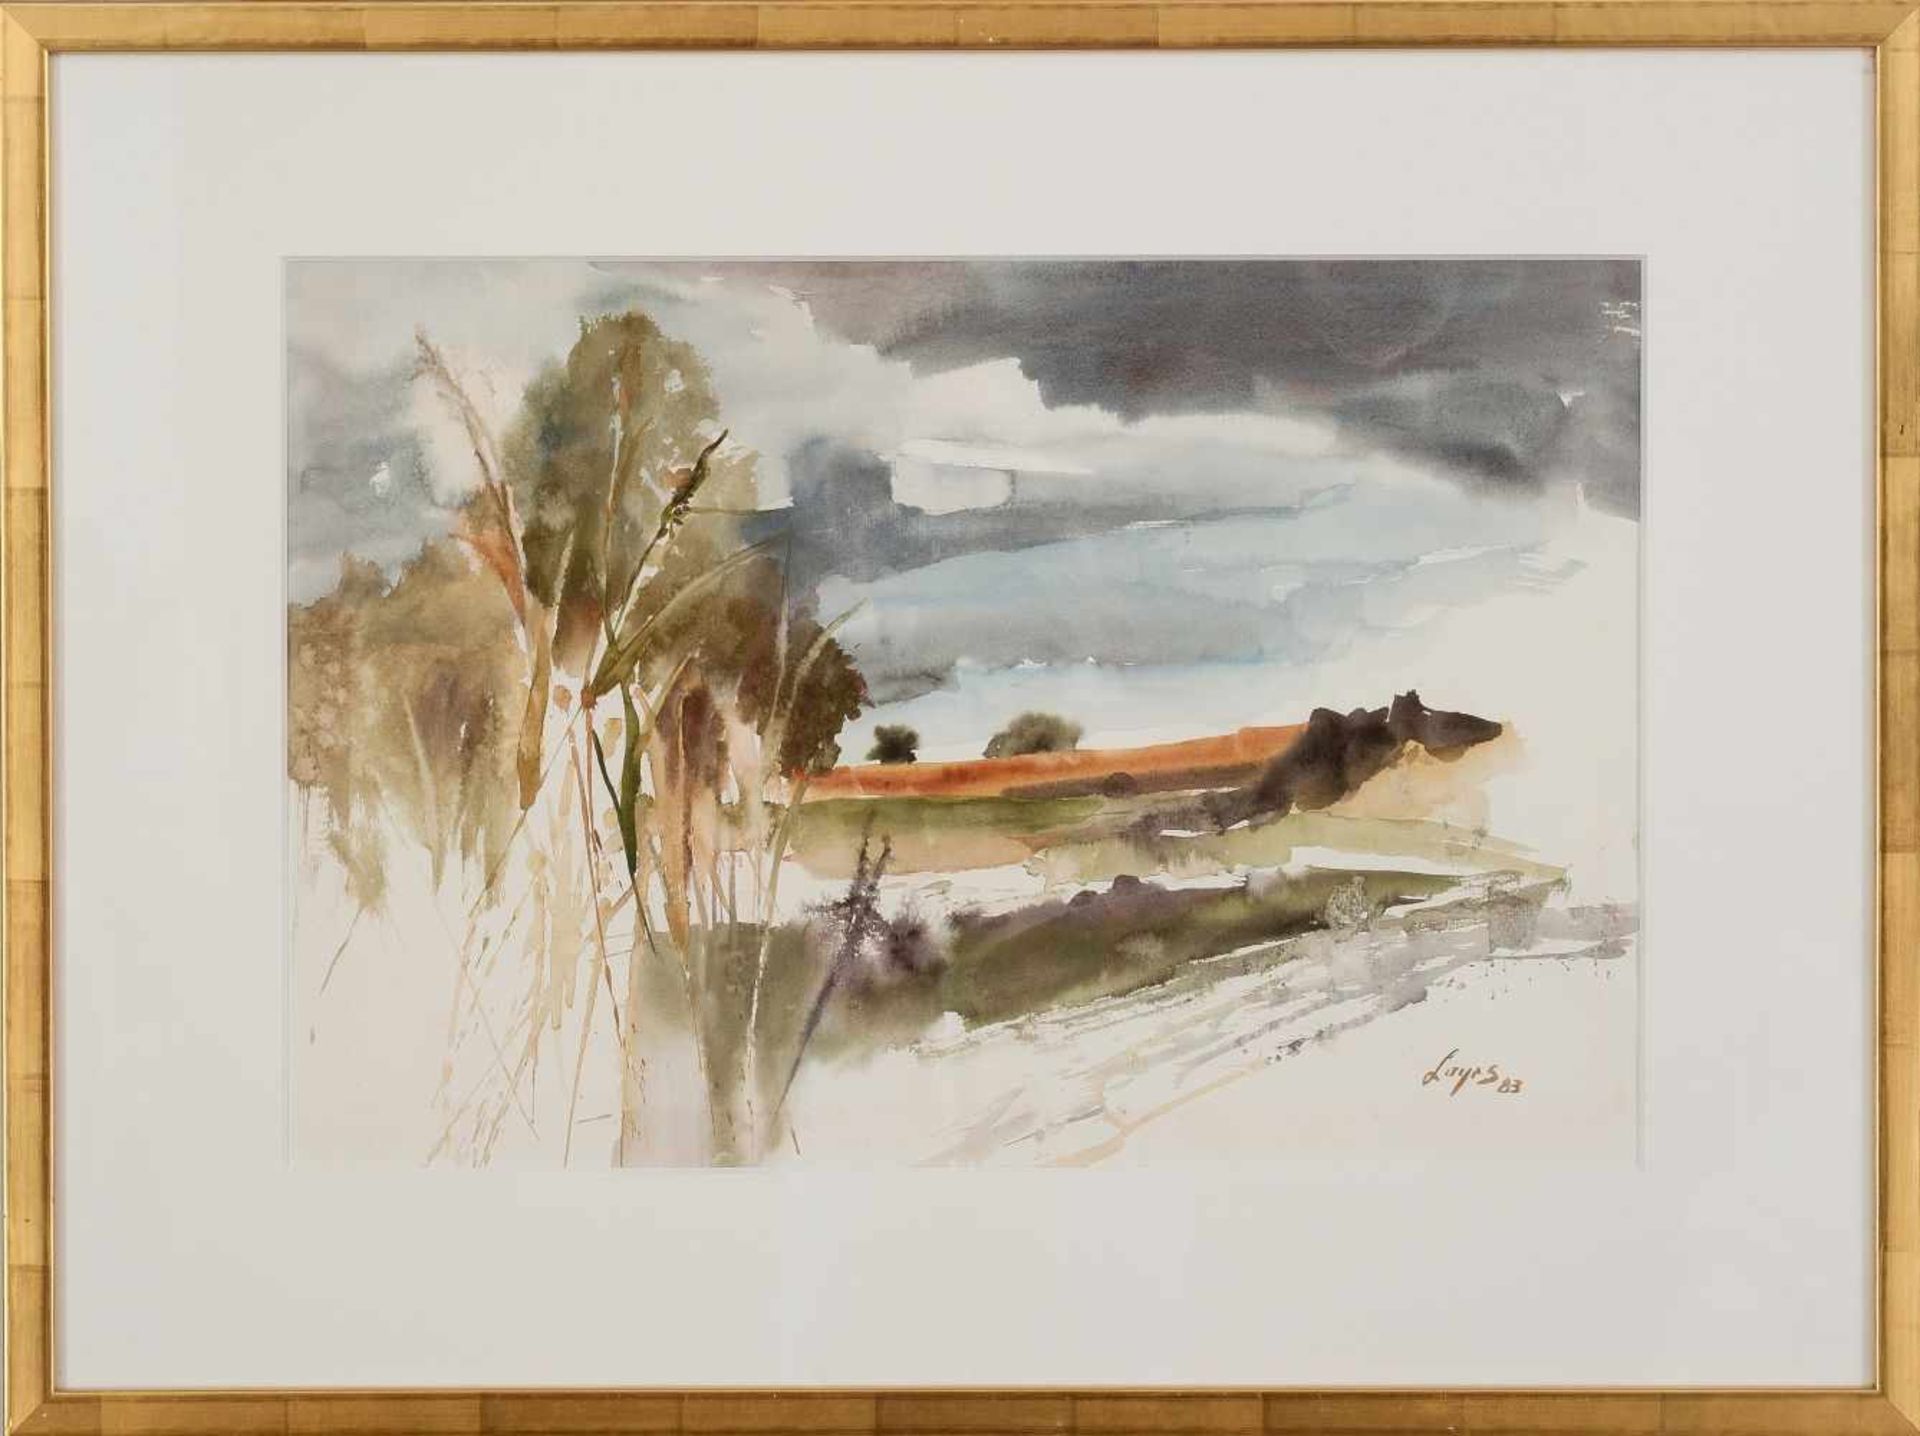 Spätsommer LandschaftSieglinde Layr(*St. Pölten 1950)Aquarell auf Papierca. 37 x 55 cm, signiert und